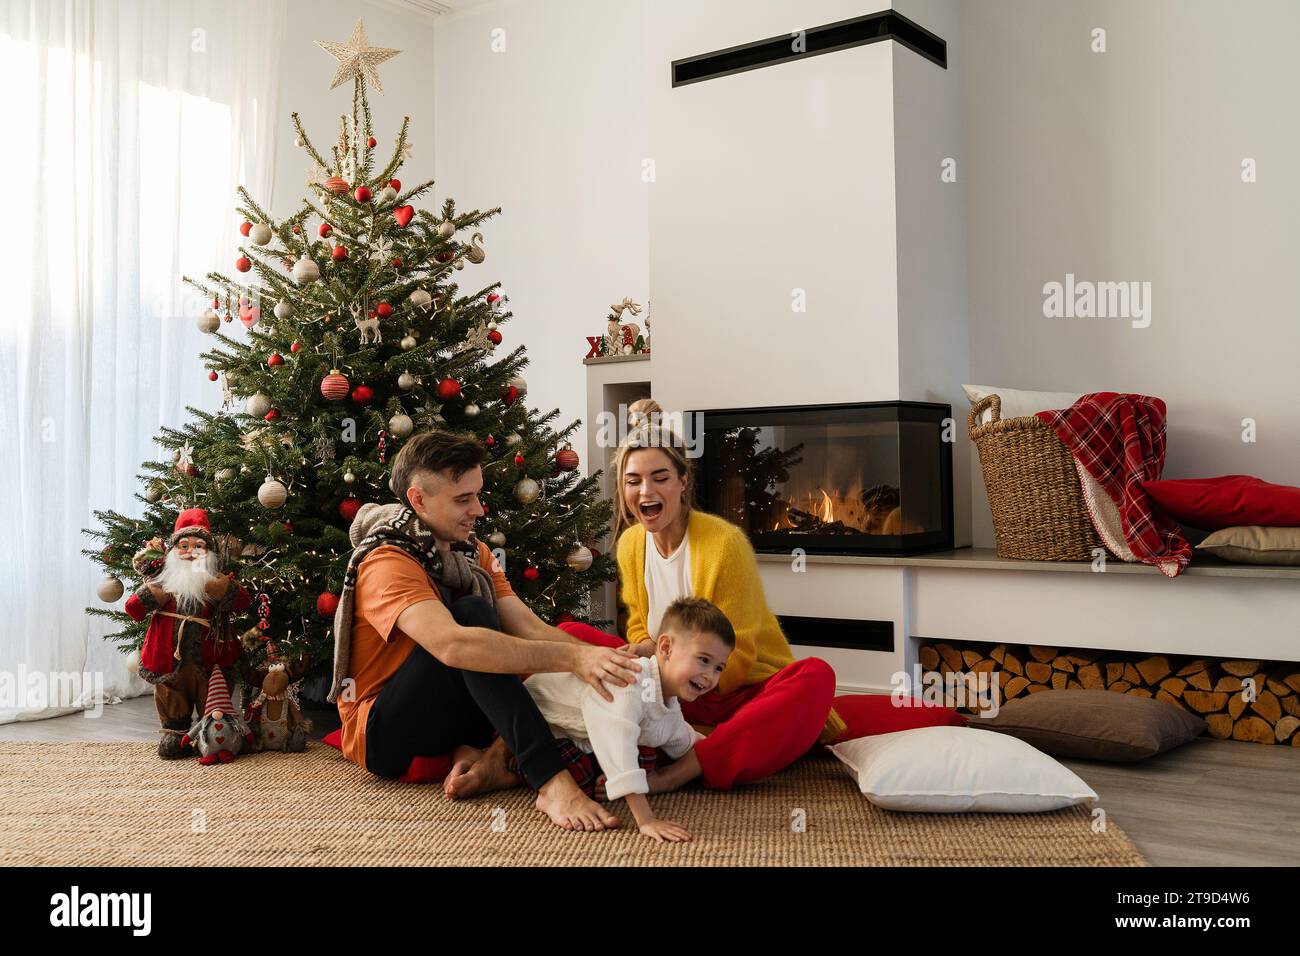 La giovane famiglia felice siede accanto a un caminetto luminoso in un accogliente soggiorno, adornato con un albero di Natale e decorazioni festive. Foto Stock